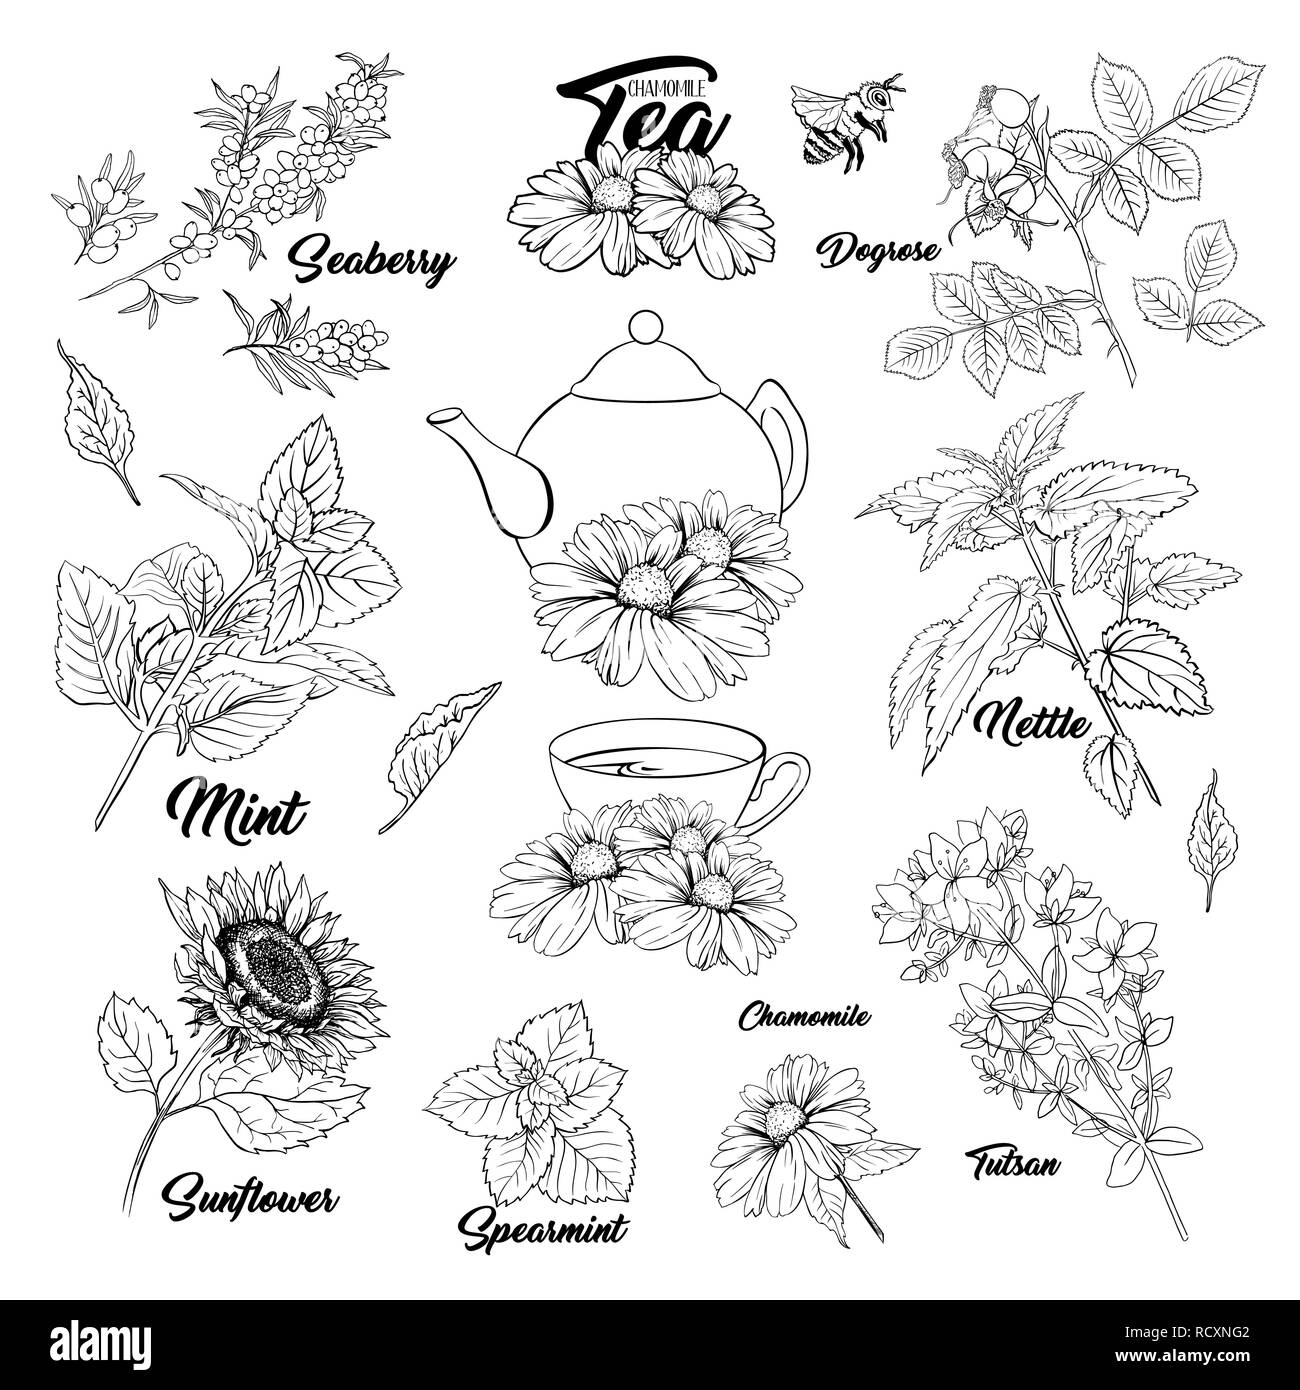 Il tè di erbe piante botanica profilo impostato. Schizzo isolato disegnati a mano illustrazioni incise di Stinning Daisy o fiori di camomilla. Rosa canina, menta, Tutsan erbe. La medicina di erbe ortica. Seaberry e il girasole Illustrazione Vettoriale